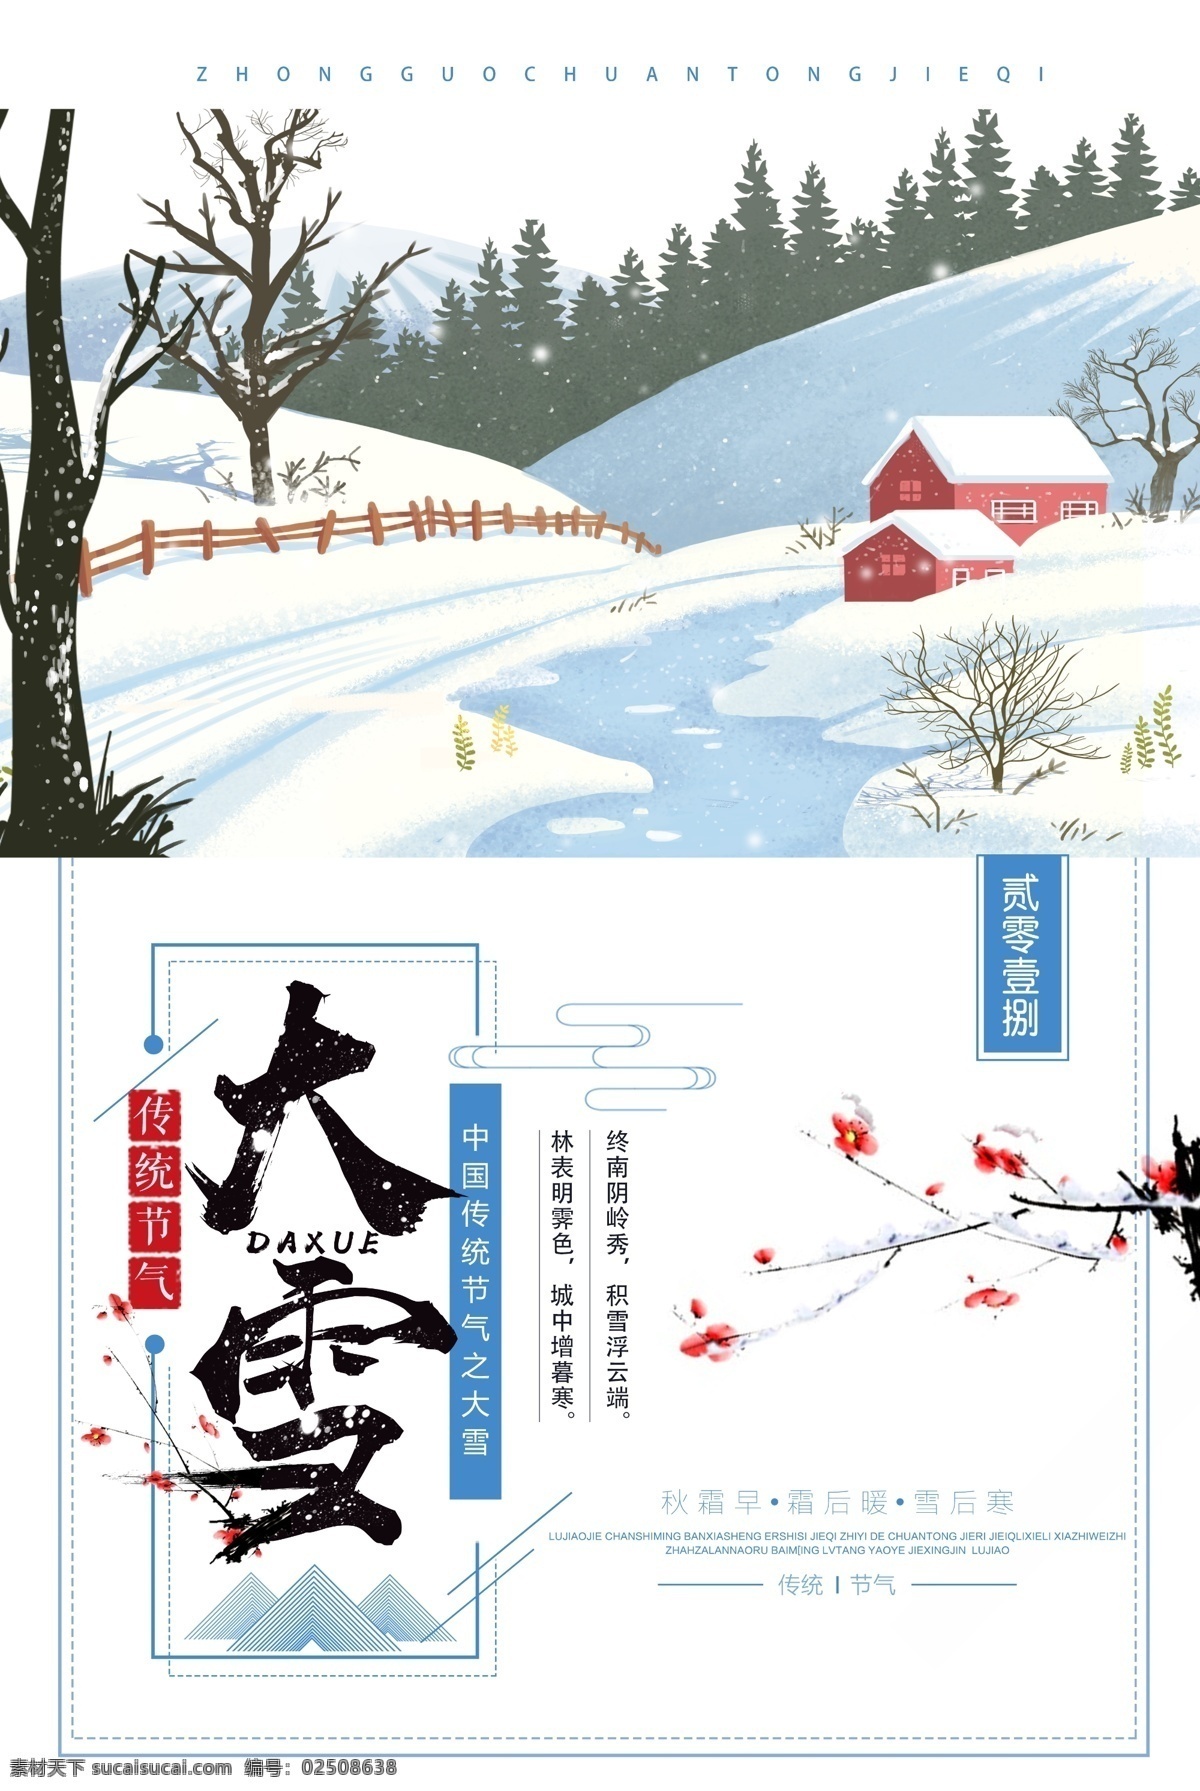 创意 卡通 大雪 节气 海报 滑雪 男孩 传统 中国传统 大雪卡通 中国 卡通中国 滑雪卡通 卡通滑雪 中国卡通 传统卡通 传统中国 创意卡通 卡通创意